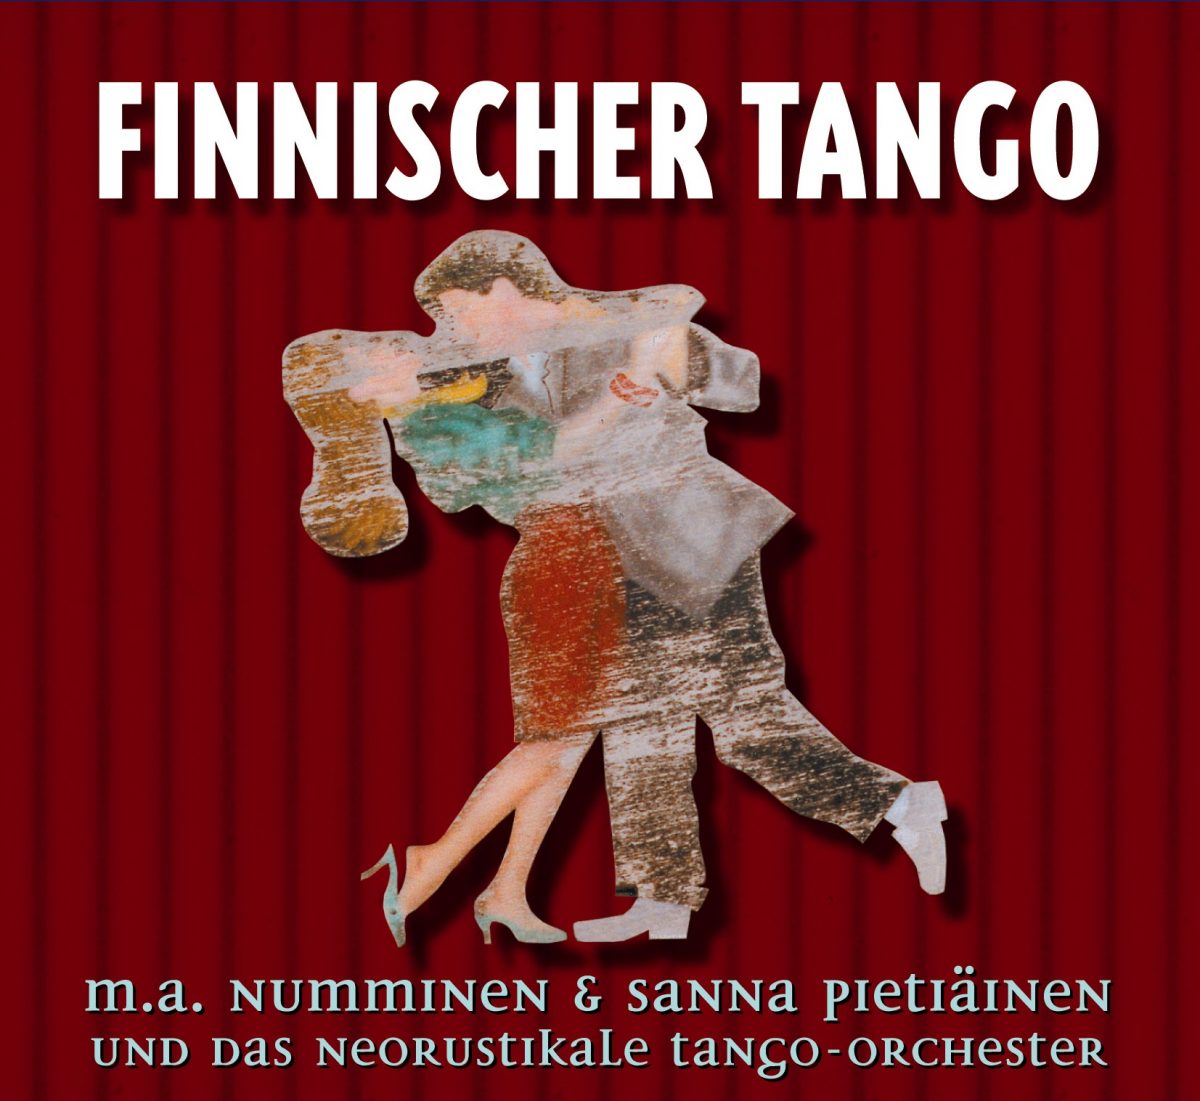 Finnischer Tango # 2 - Onko Onni Unta Vein? Ist das Glück nur ein Traum? / M.A. Numminen & Sanna Pietiäinen & Orchester